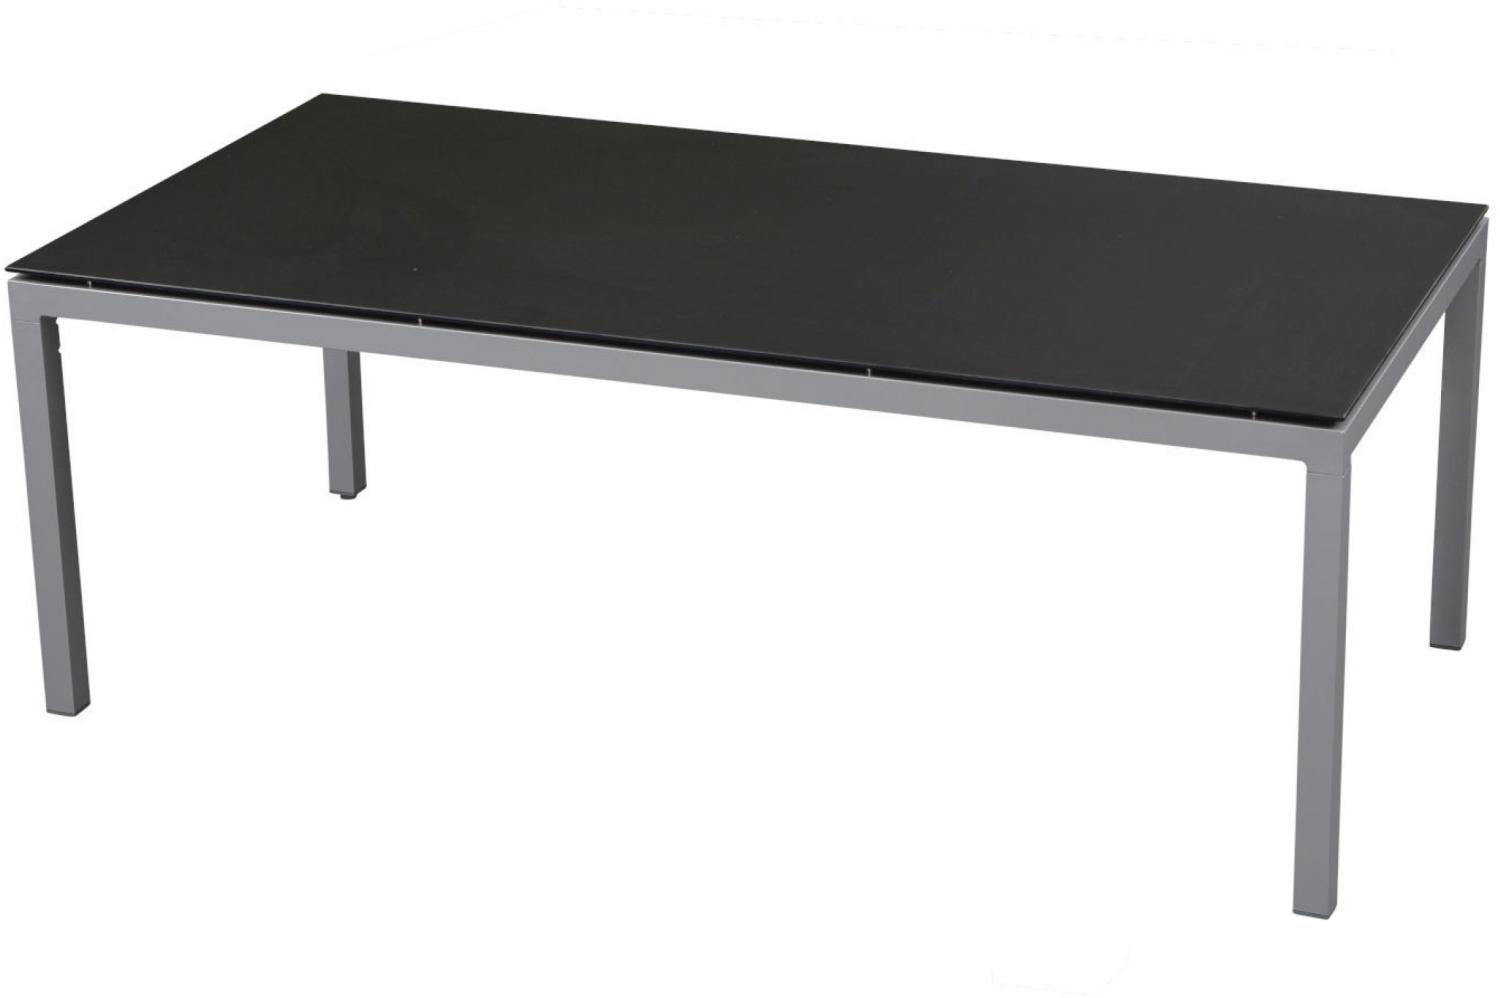 Inko Gartentisch Aluminium silber 200x100 cm Terrassentisch Tischplatte nach Wahl Deropal weiß Bild 1